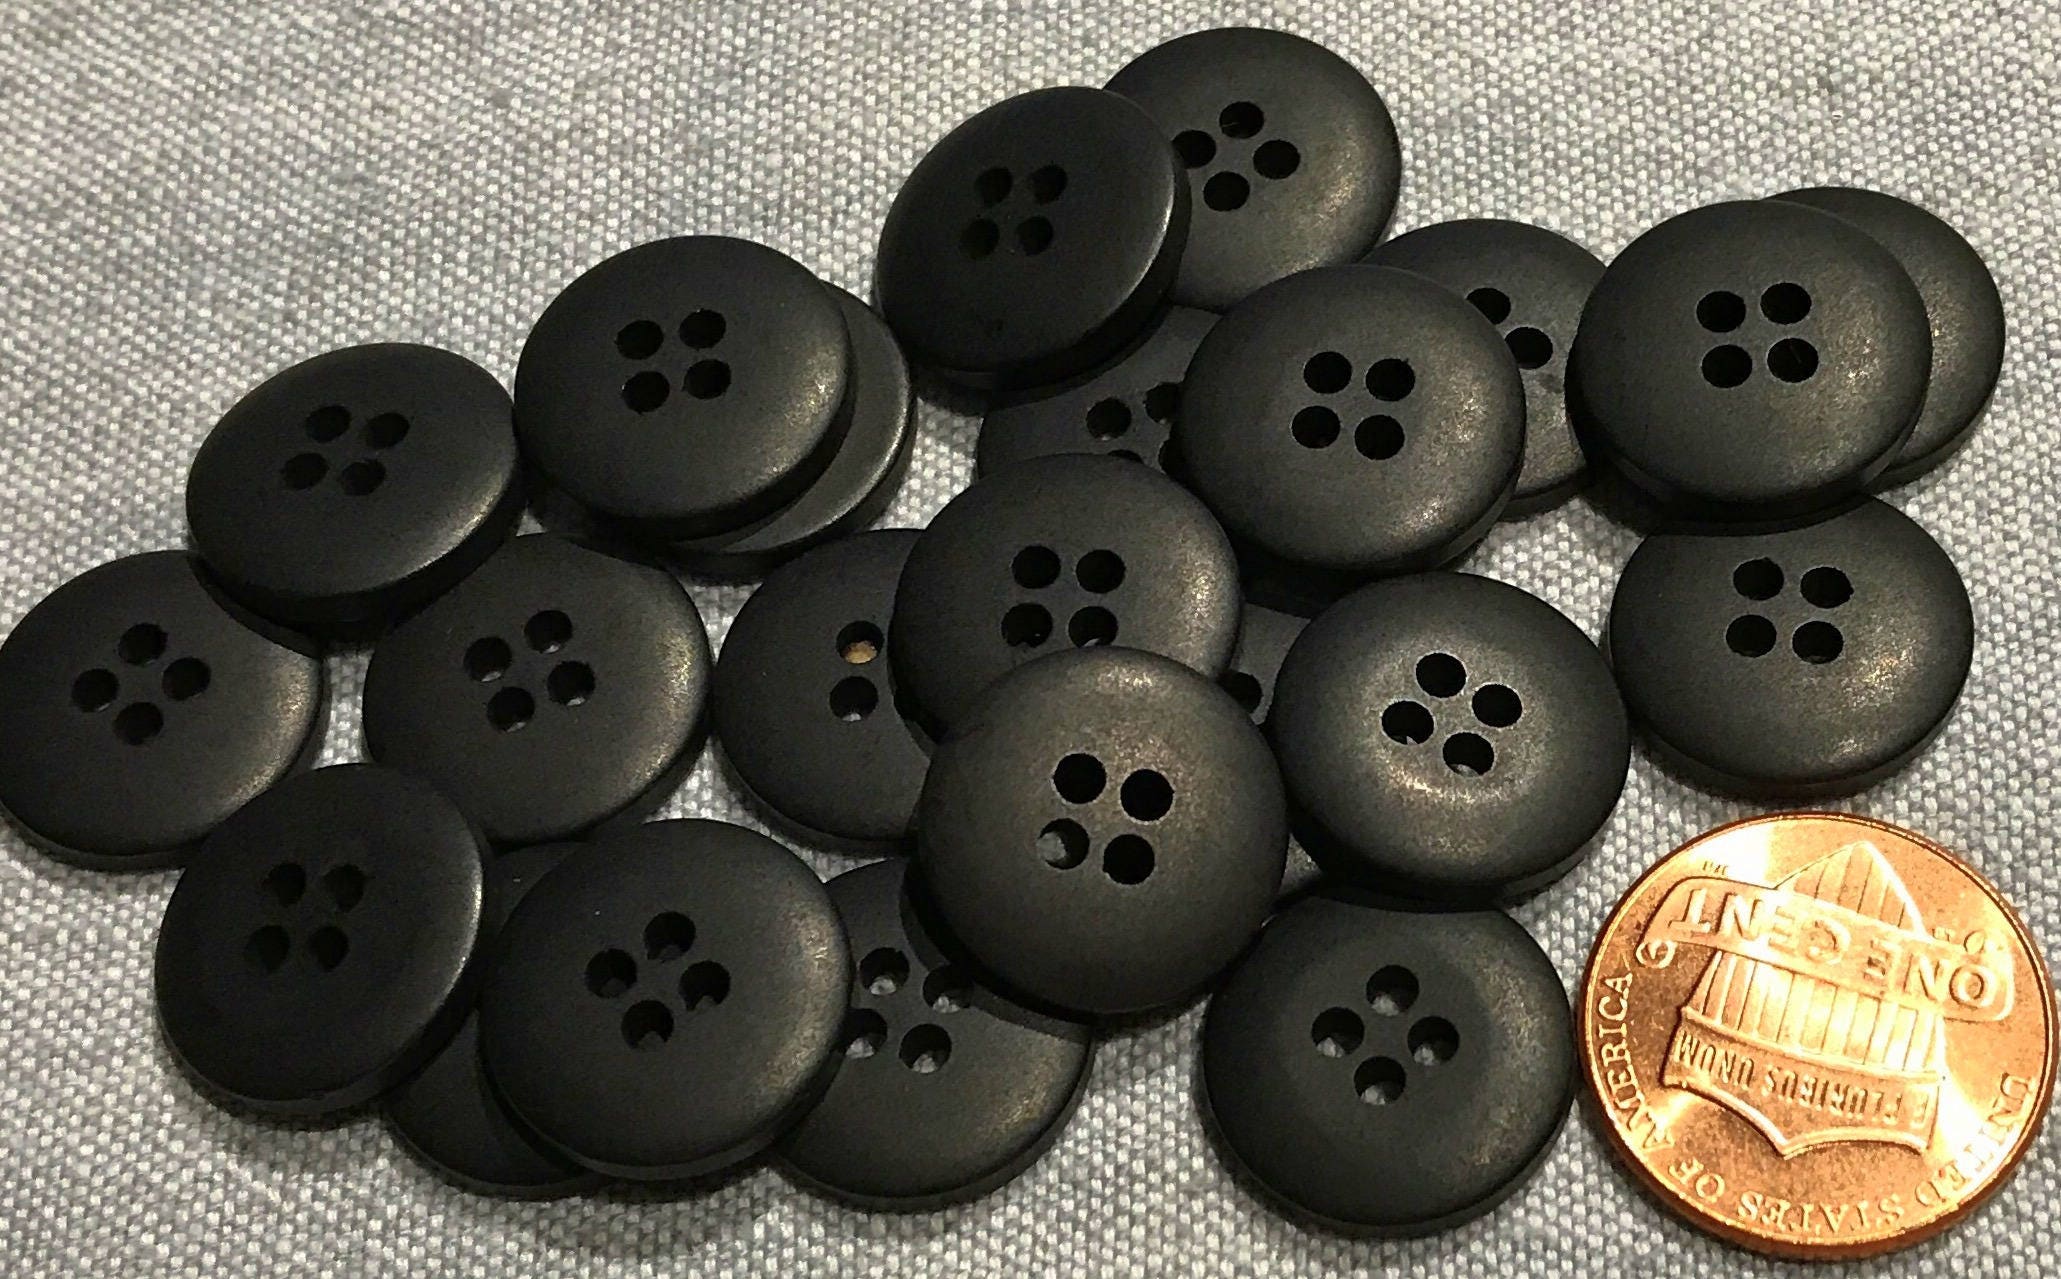 1 Black Buttons 1 Inch Black Plastic Buttons Bulk Black Buttons